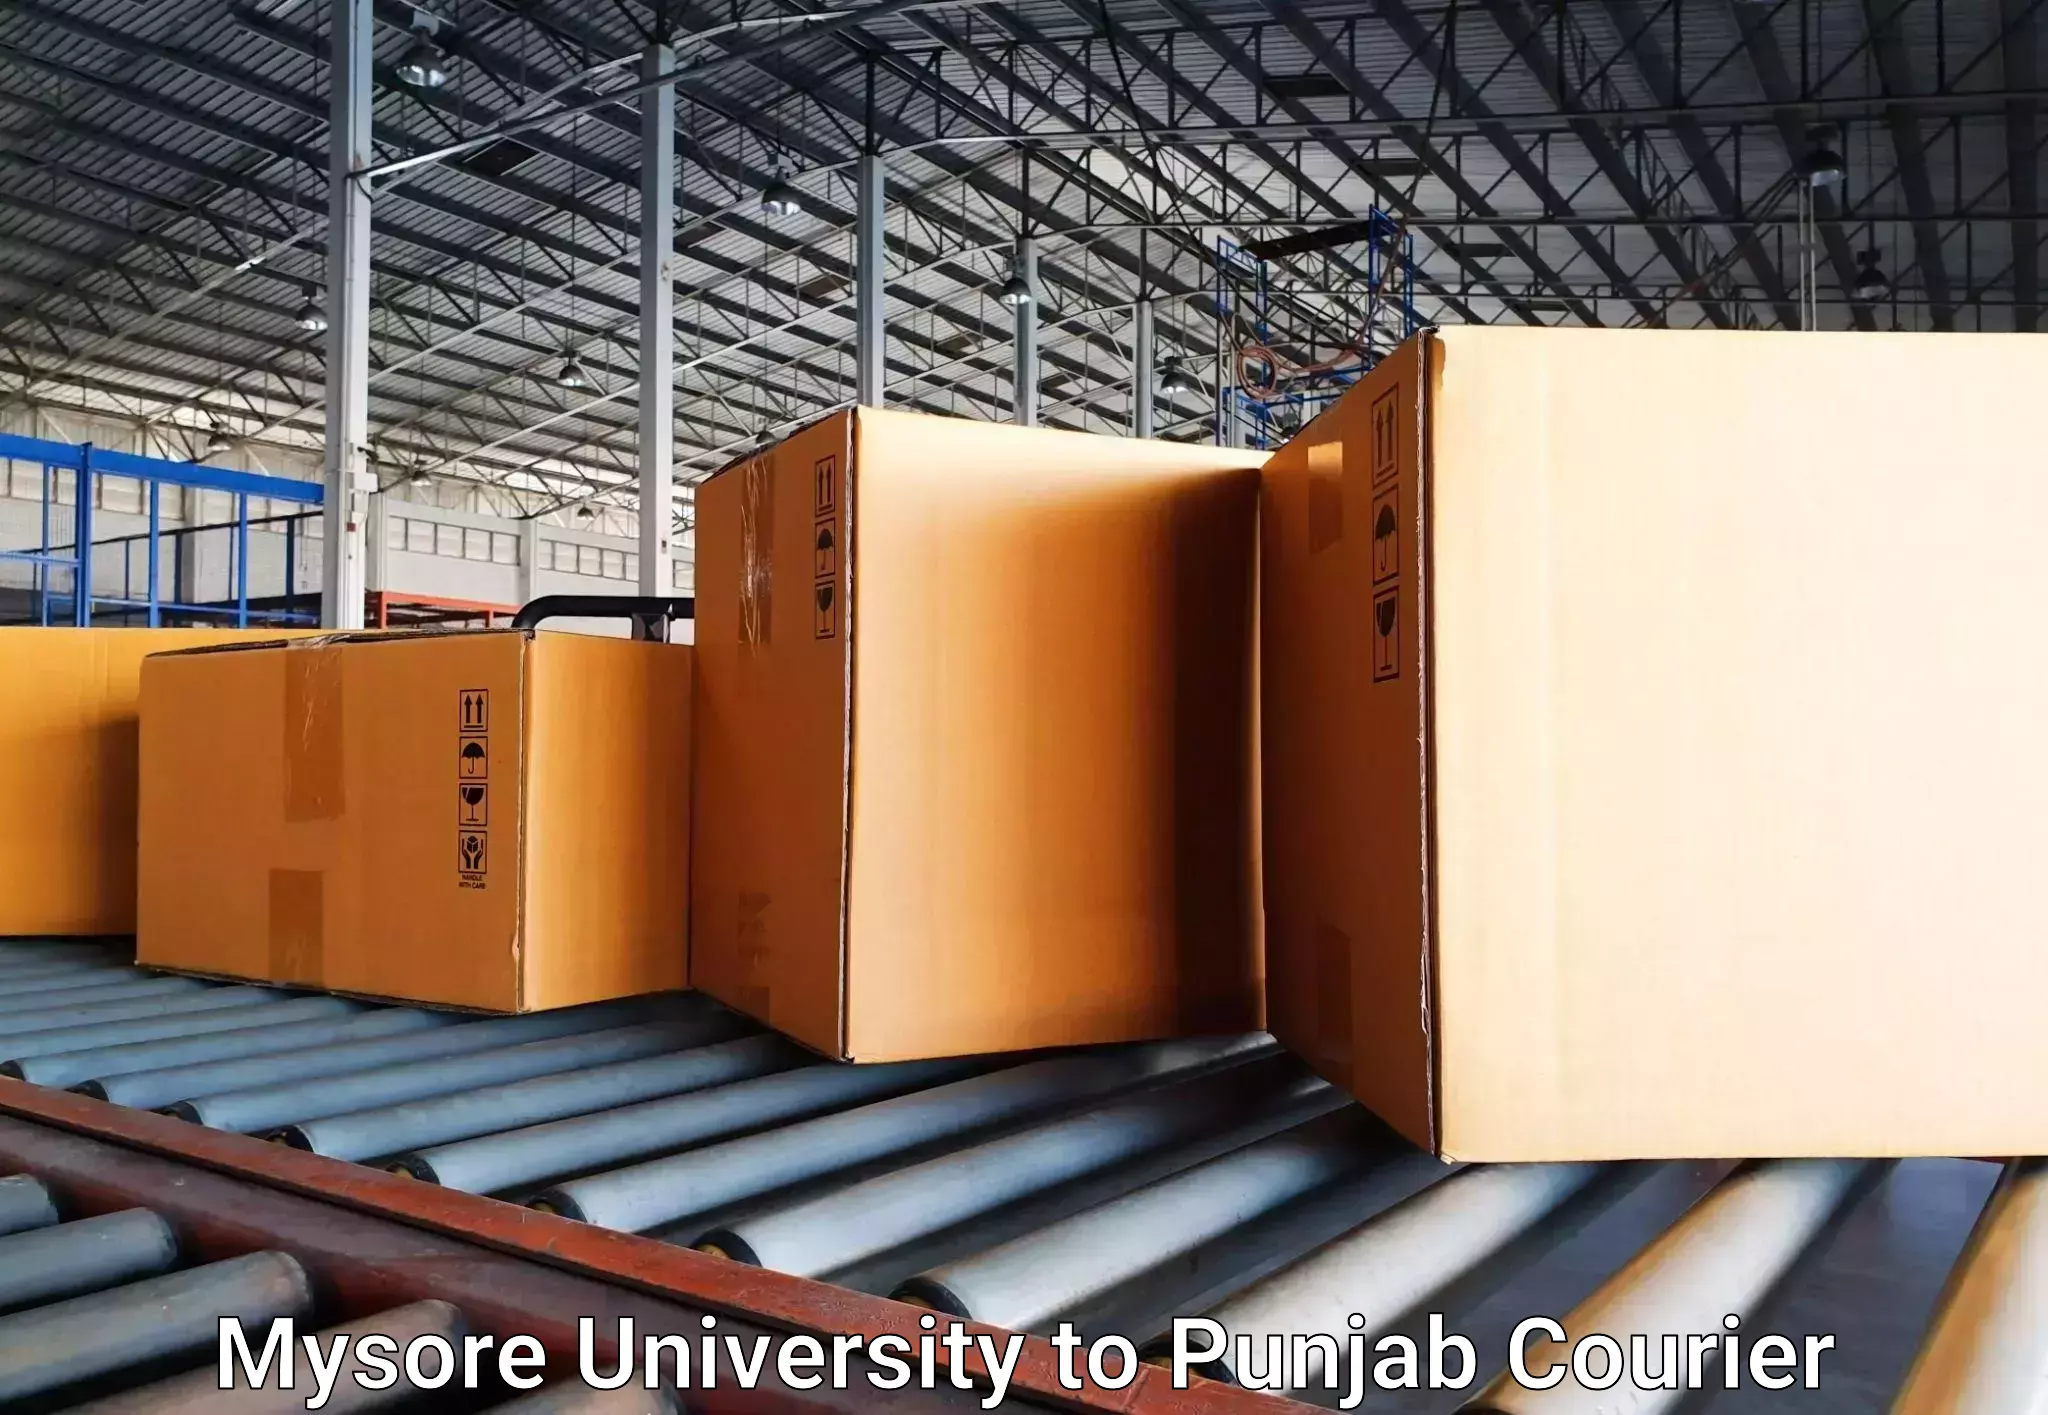 Baggage courier rates Mysore University to Central University of Punjab Bathinda